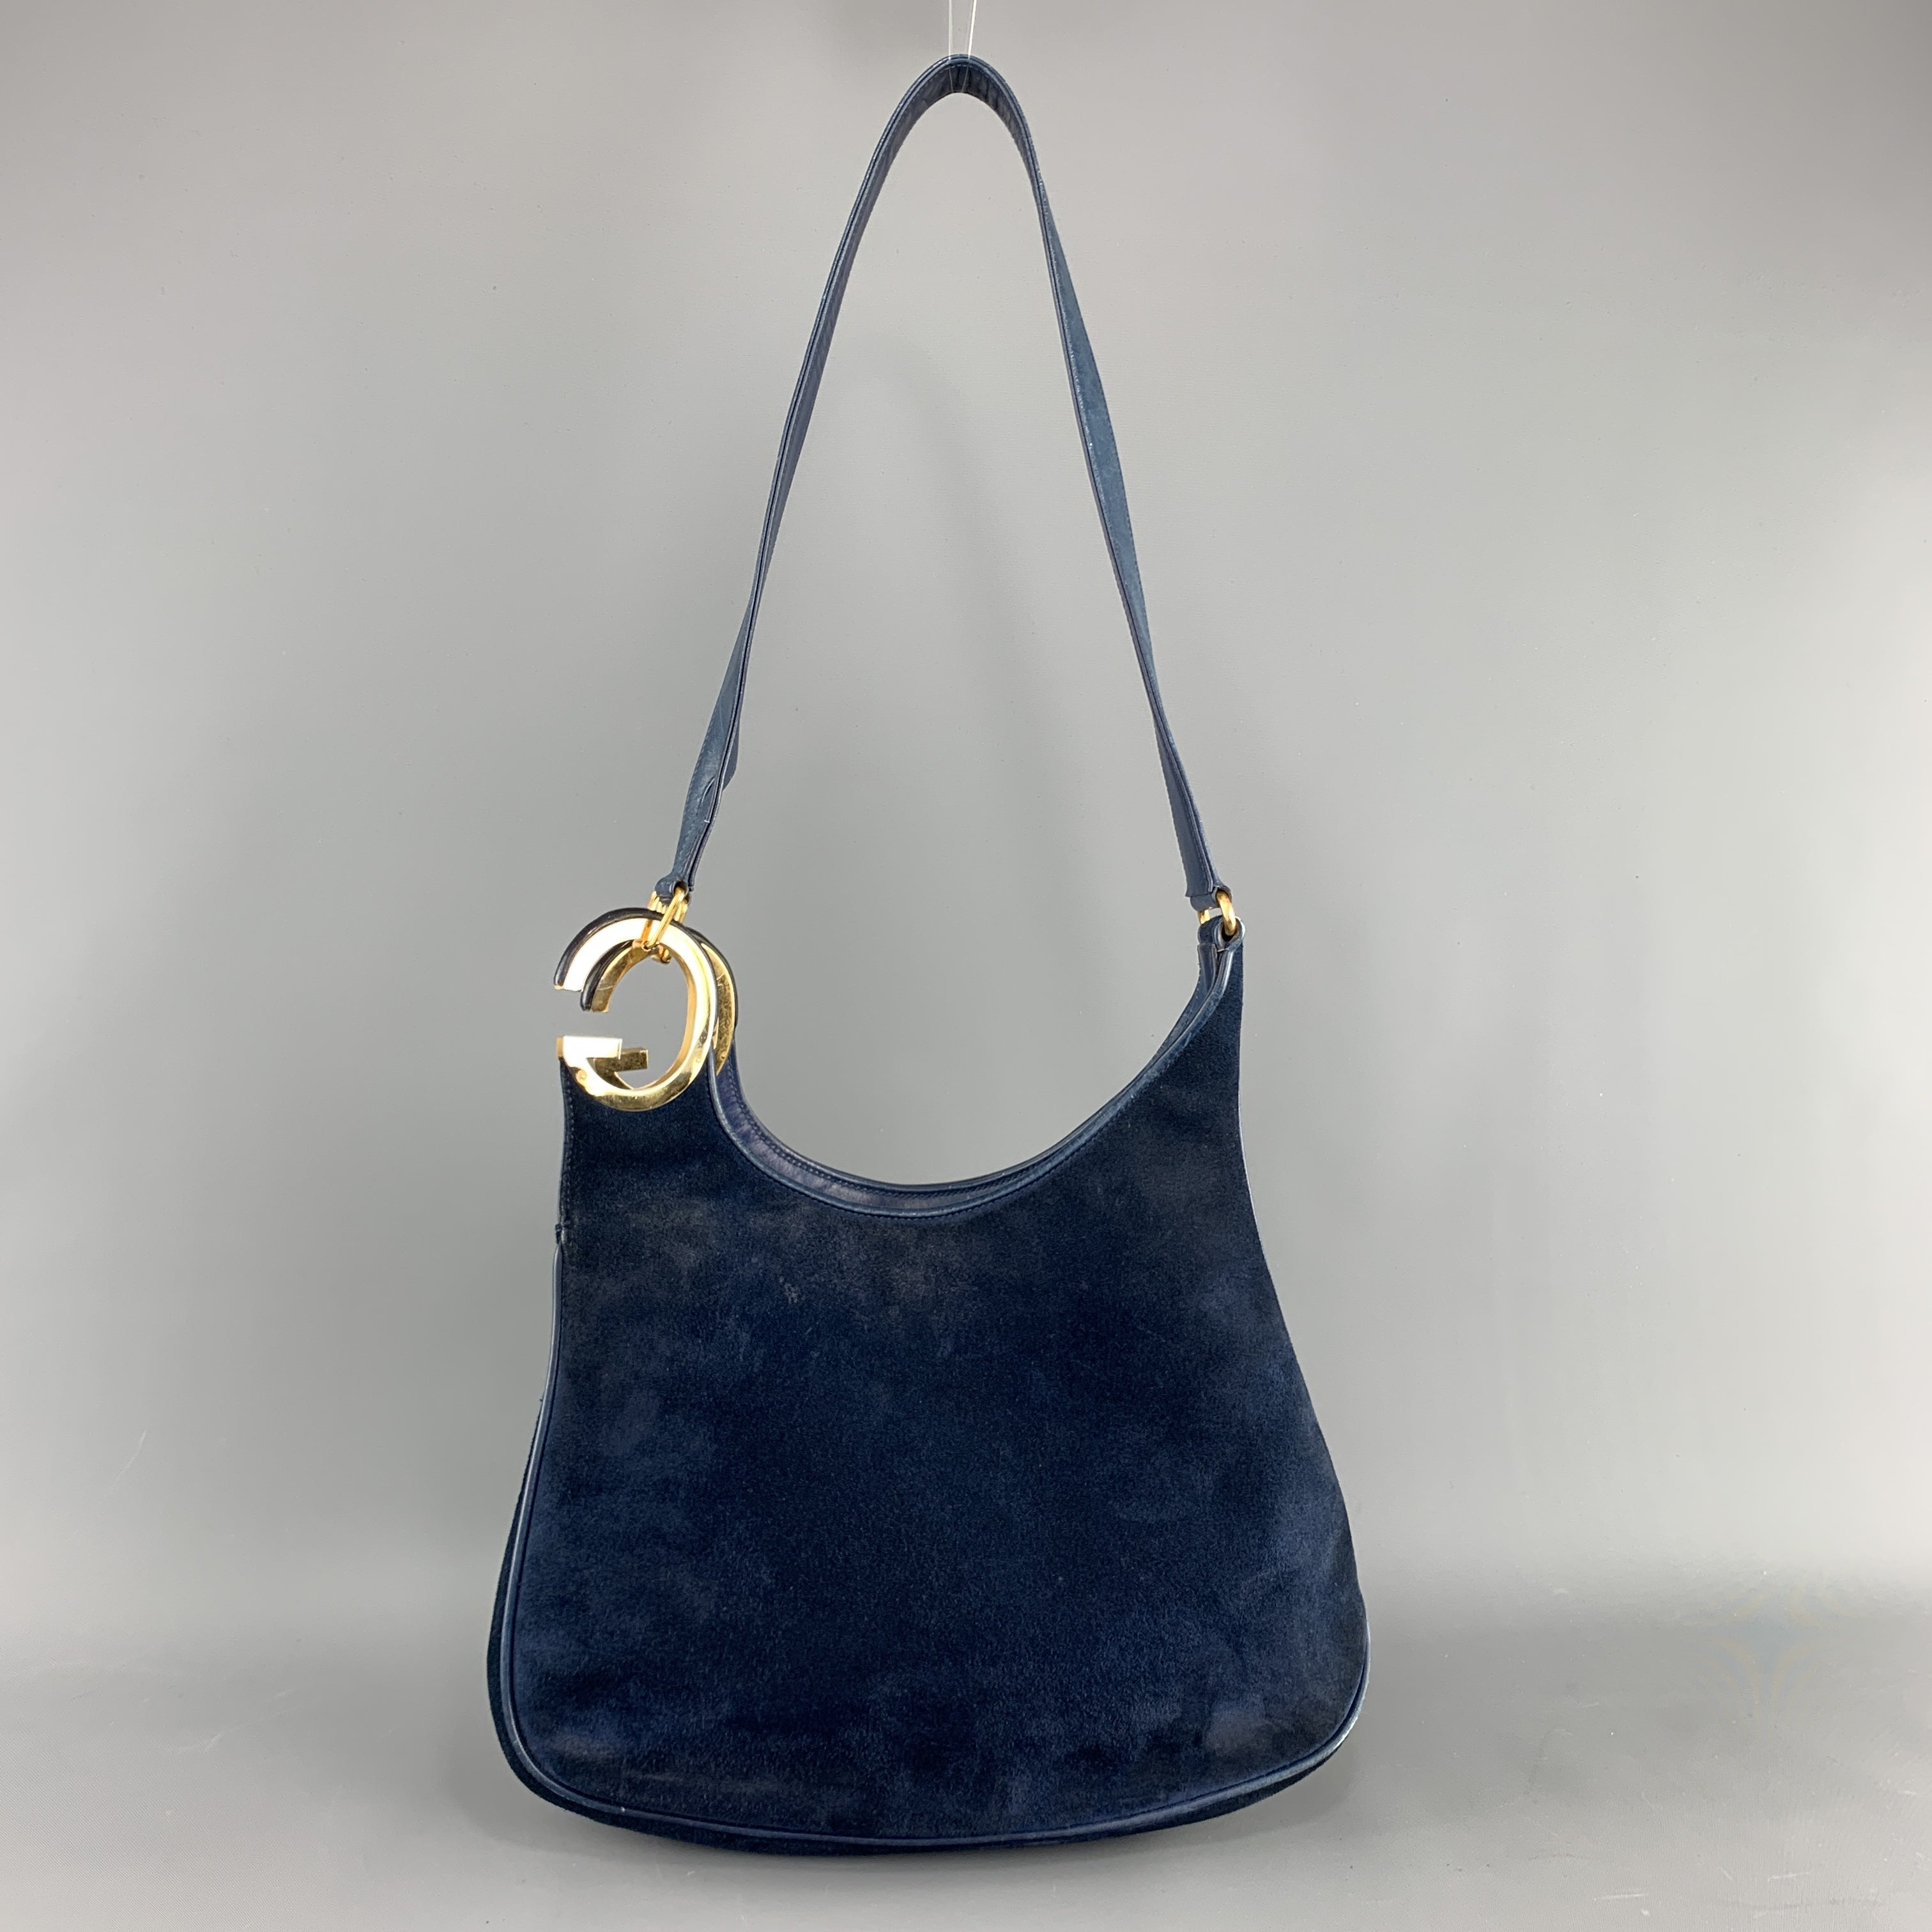 Vintage 1960s Hermès Constance Shoulder Bag in Navy Blue Suede